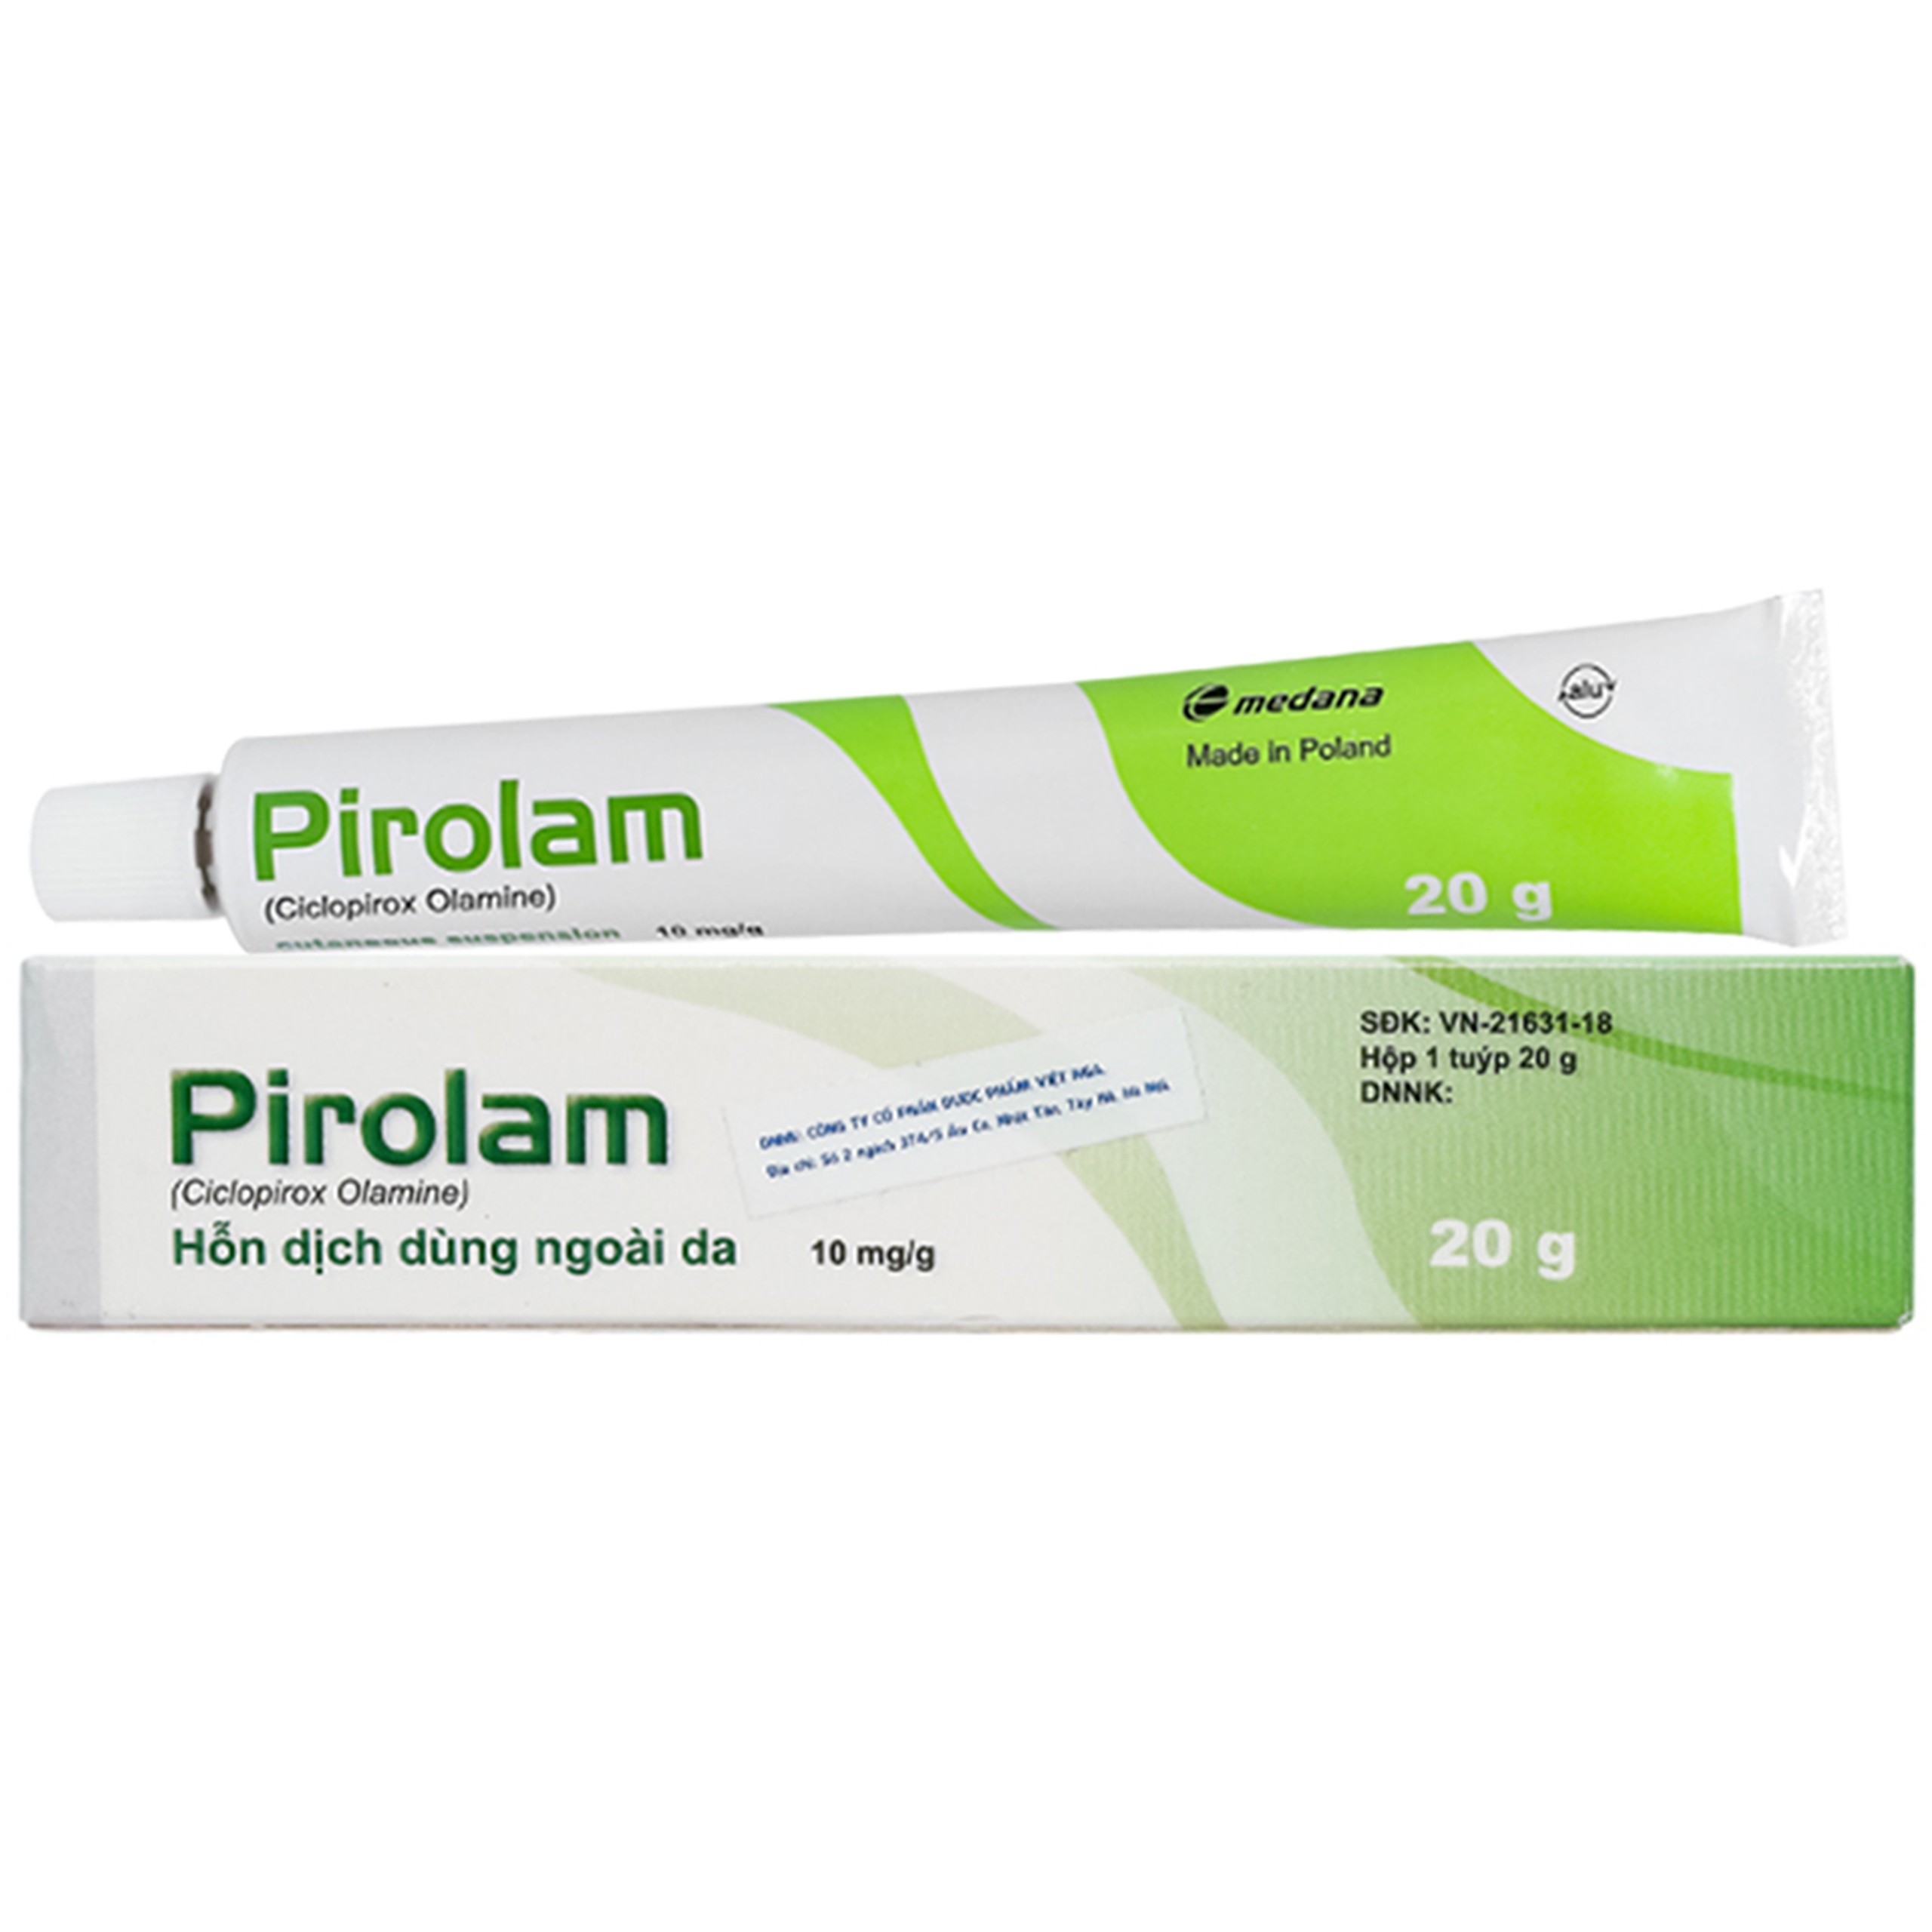 Thuốc bôi da Pirolam Medana xanh lá điều trị các bệnh nấm da, nấm da đầu, nấm da chân (20g)